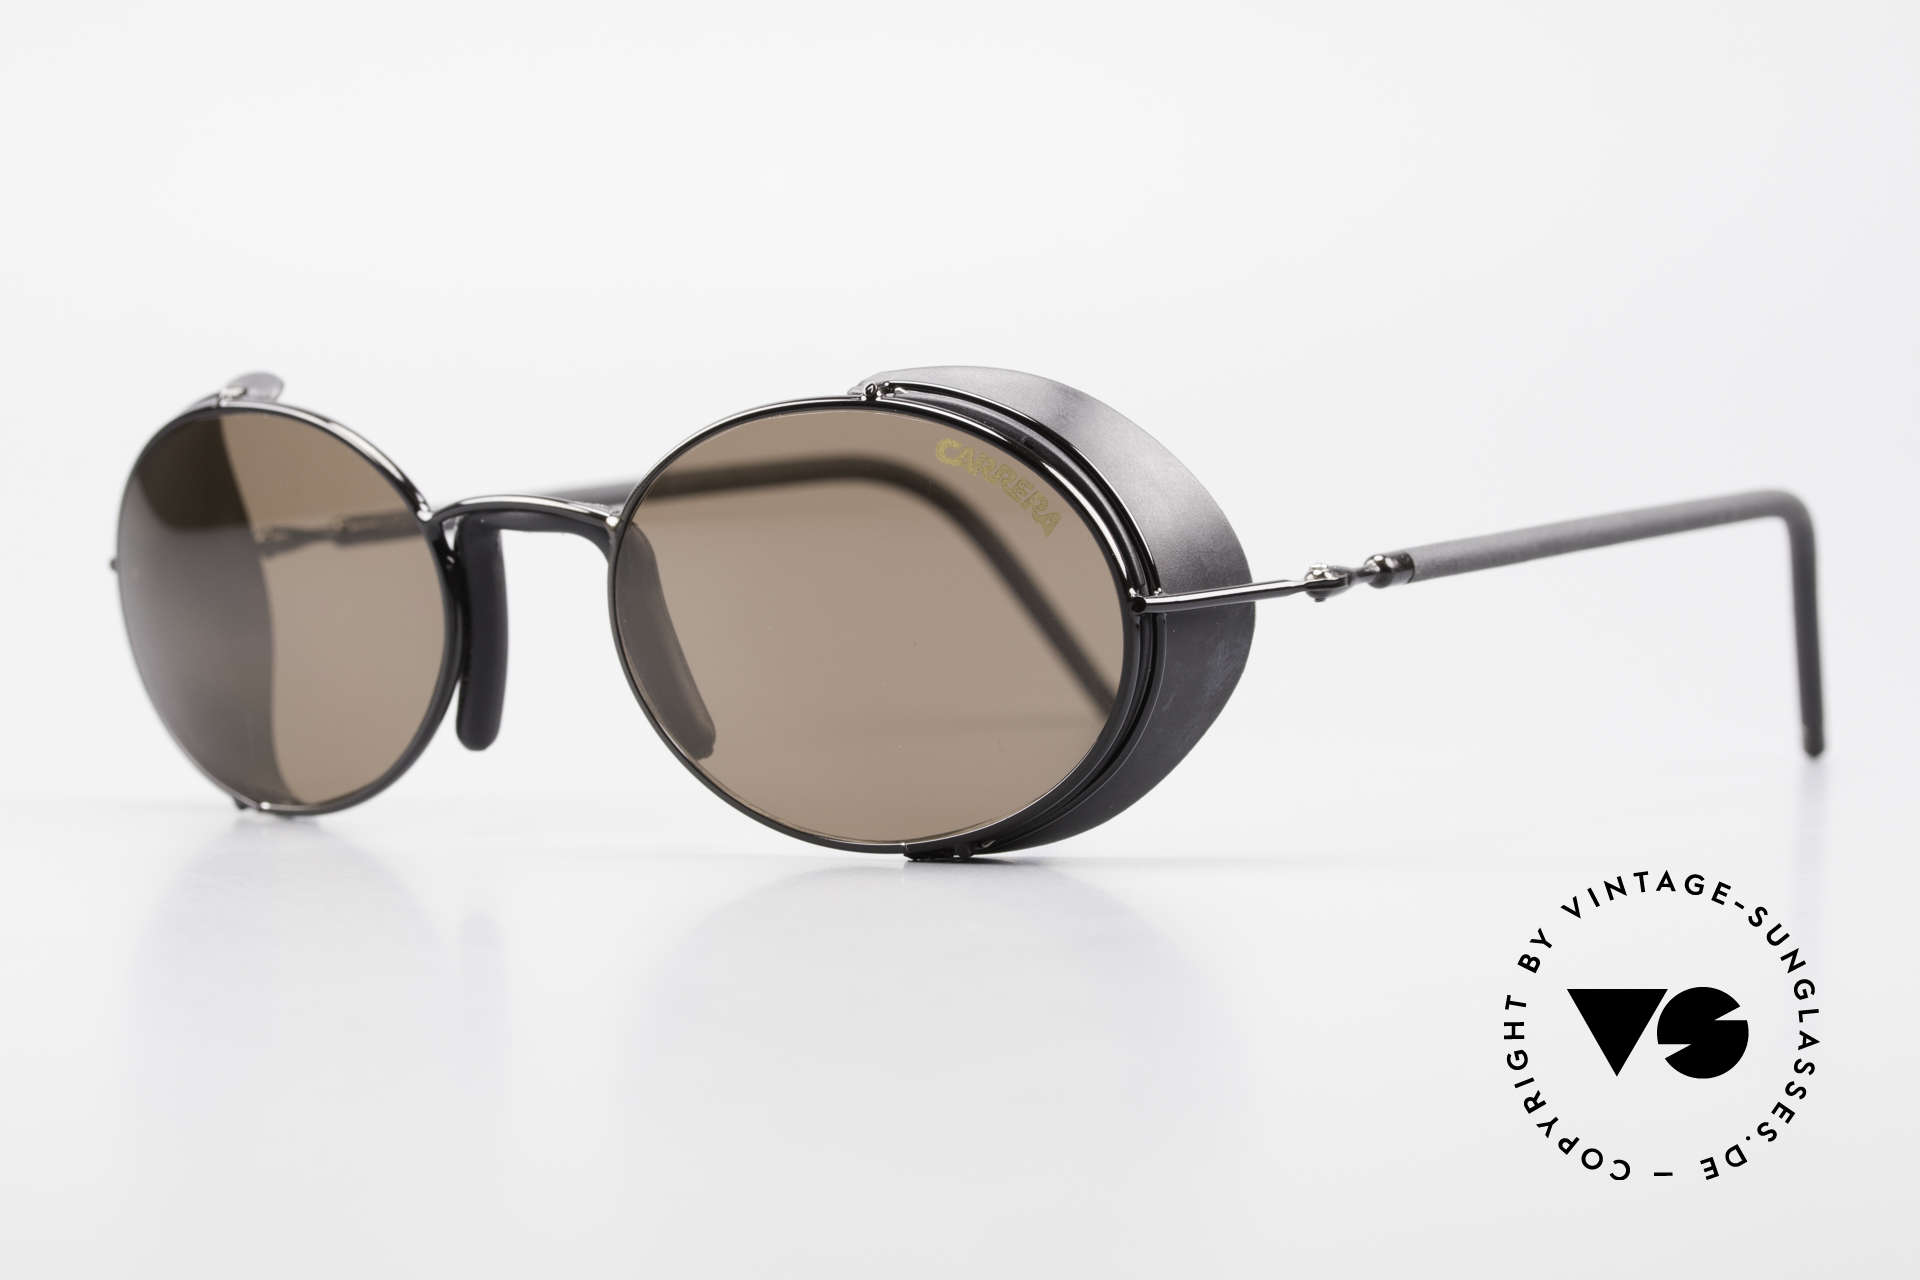 Sonnenbrillen Carrera 5580 90er Steampunk Sportbrille Vintage Sunglasses 